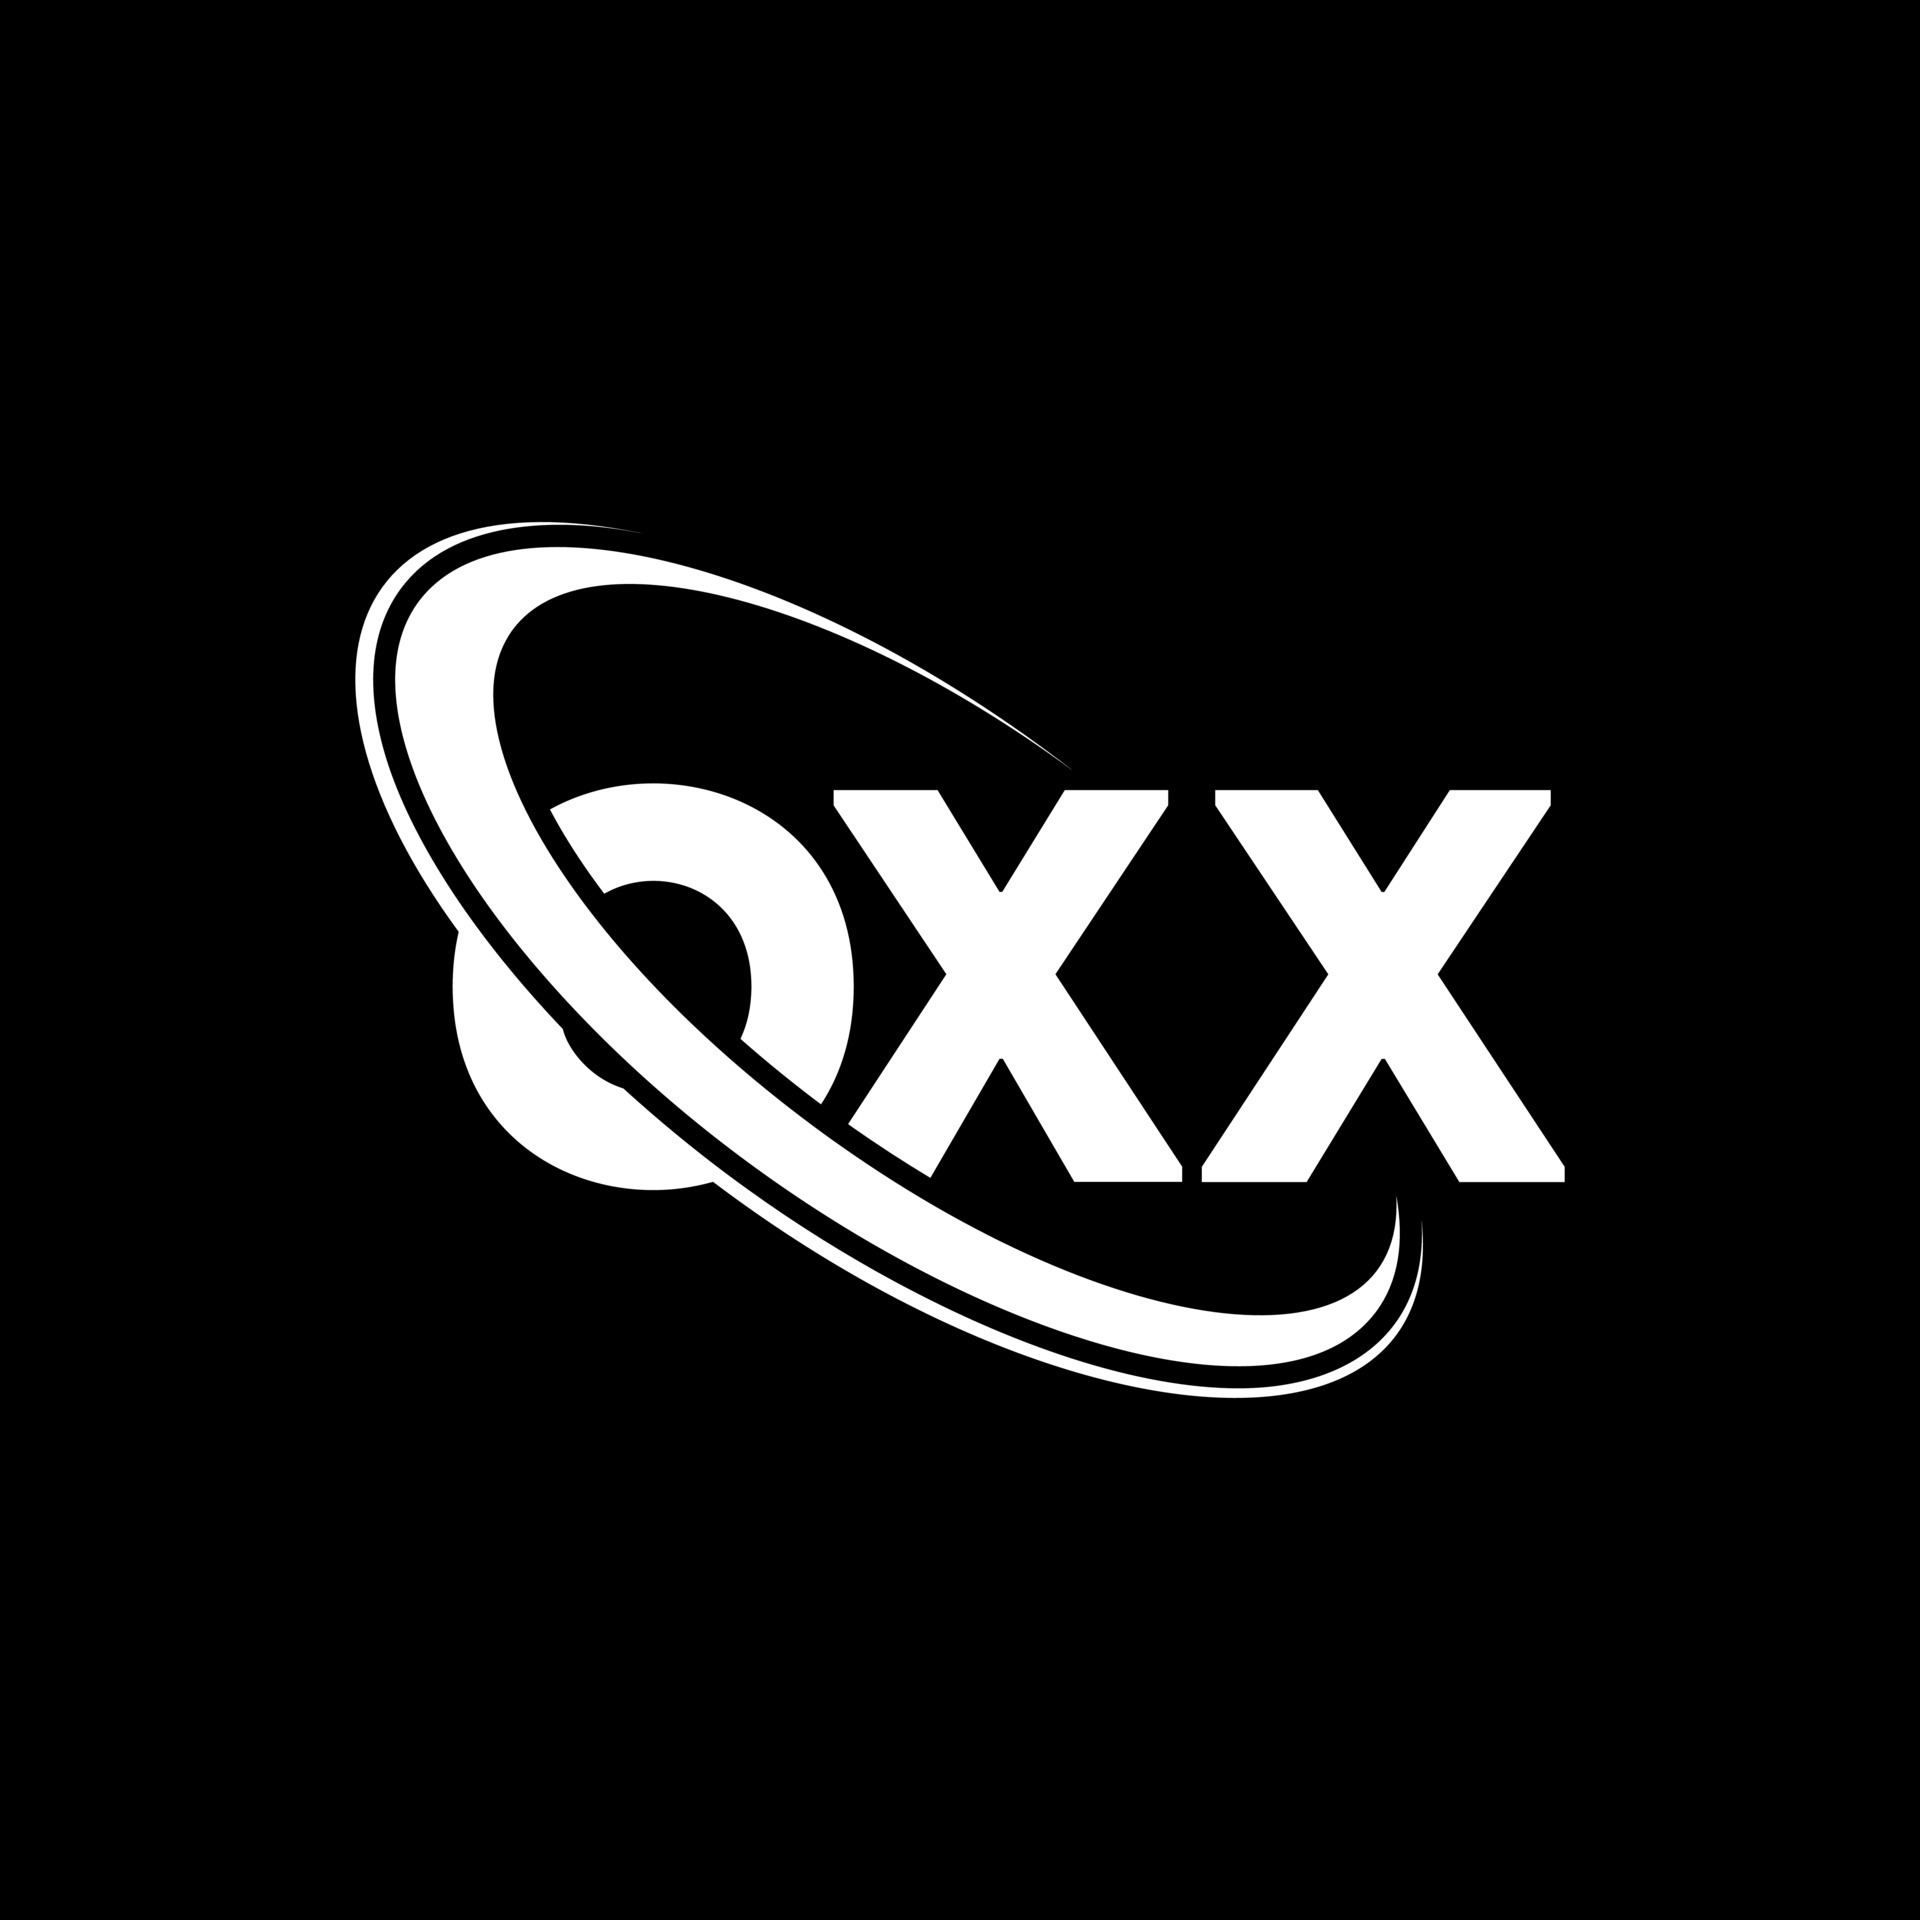  OXX